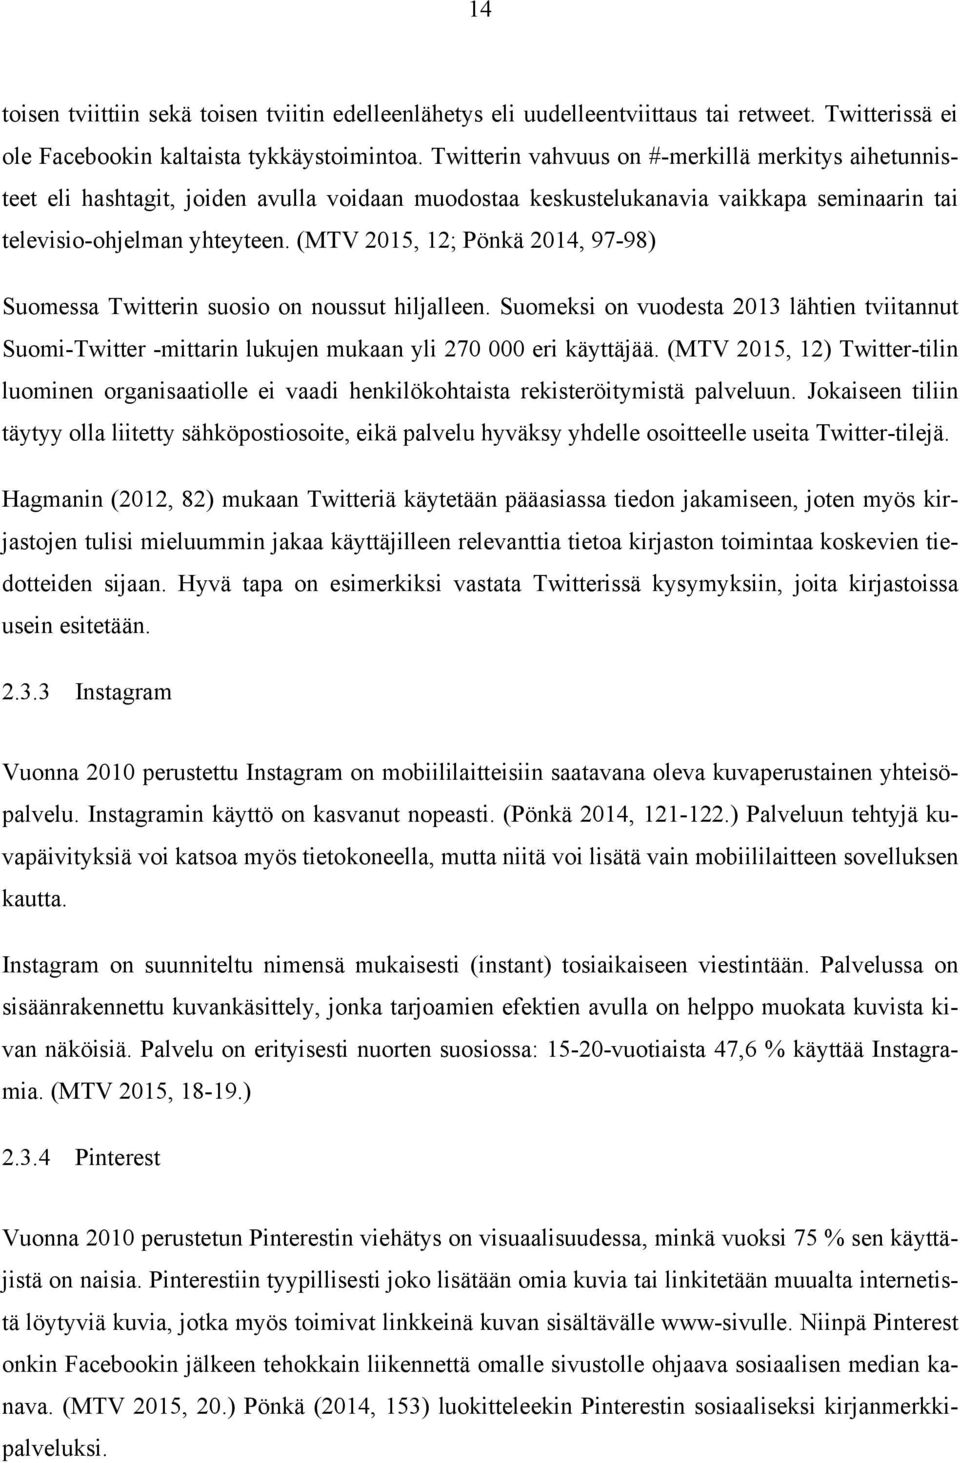 (MTV 2015, 12; Pönkä 2014, 97-98) Suomessa Twitterin suosio on noussut hiljalleen. Suomeksi on vuodesta 2013 lähtien tviitannut Suomi-Twitter -mittarin lukujen mukaan yli 270 000 eri käyttäjää.